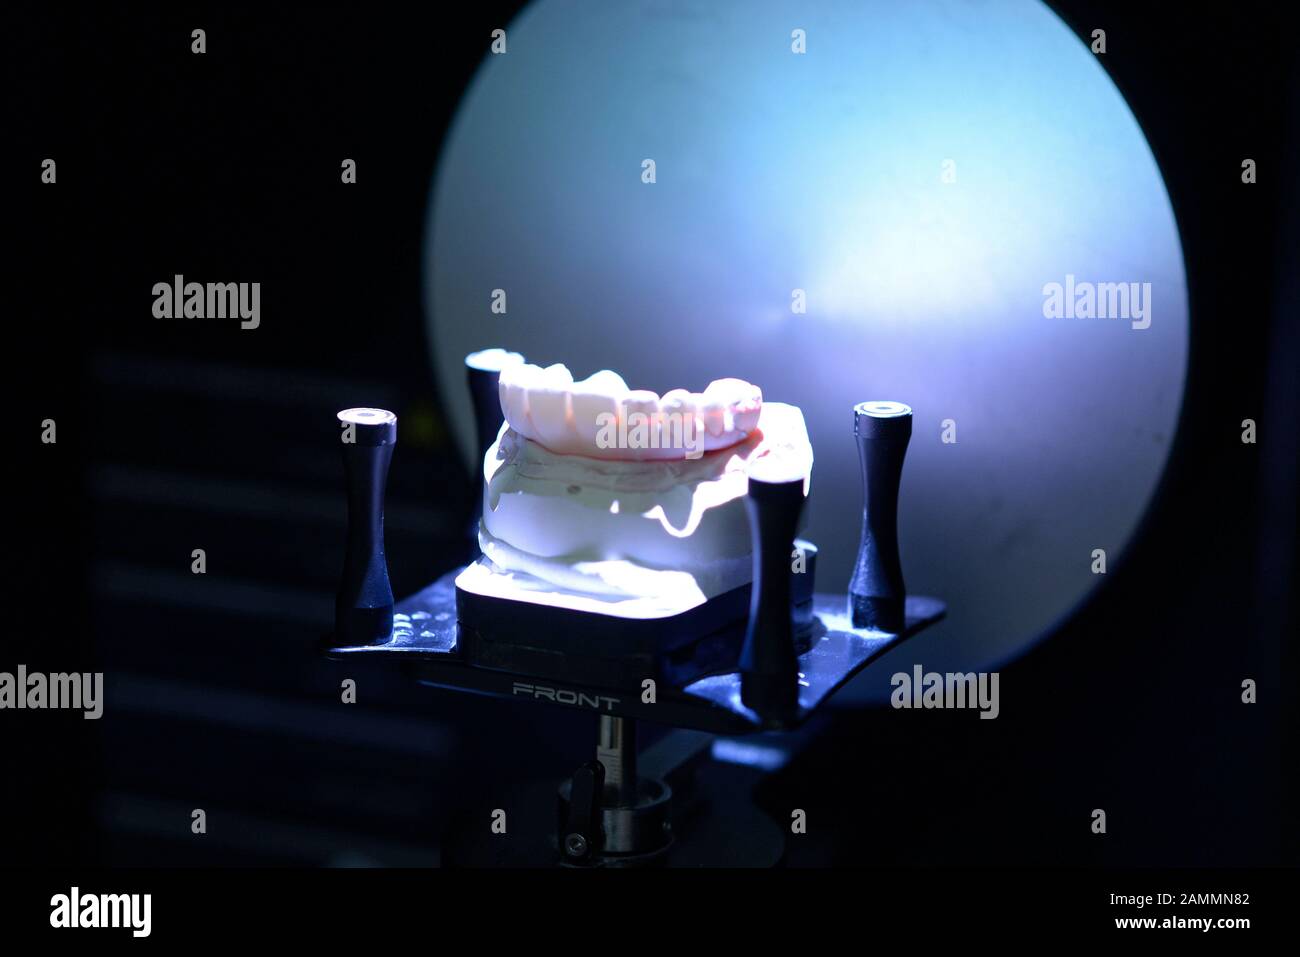 In der Implaneo Dental Clinic erhält ein Patient einen neuen Zahnersatz (hier im Labor) mit Implantaten vom 3D-Drucker. [Automatisierte Übersetzung] Stockfoto